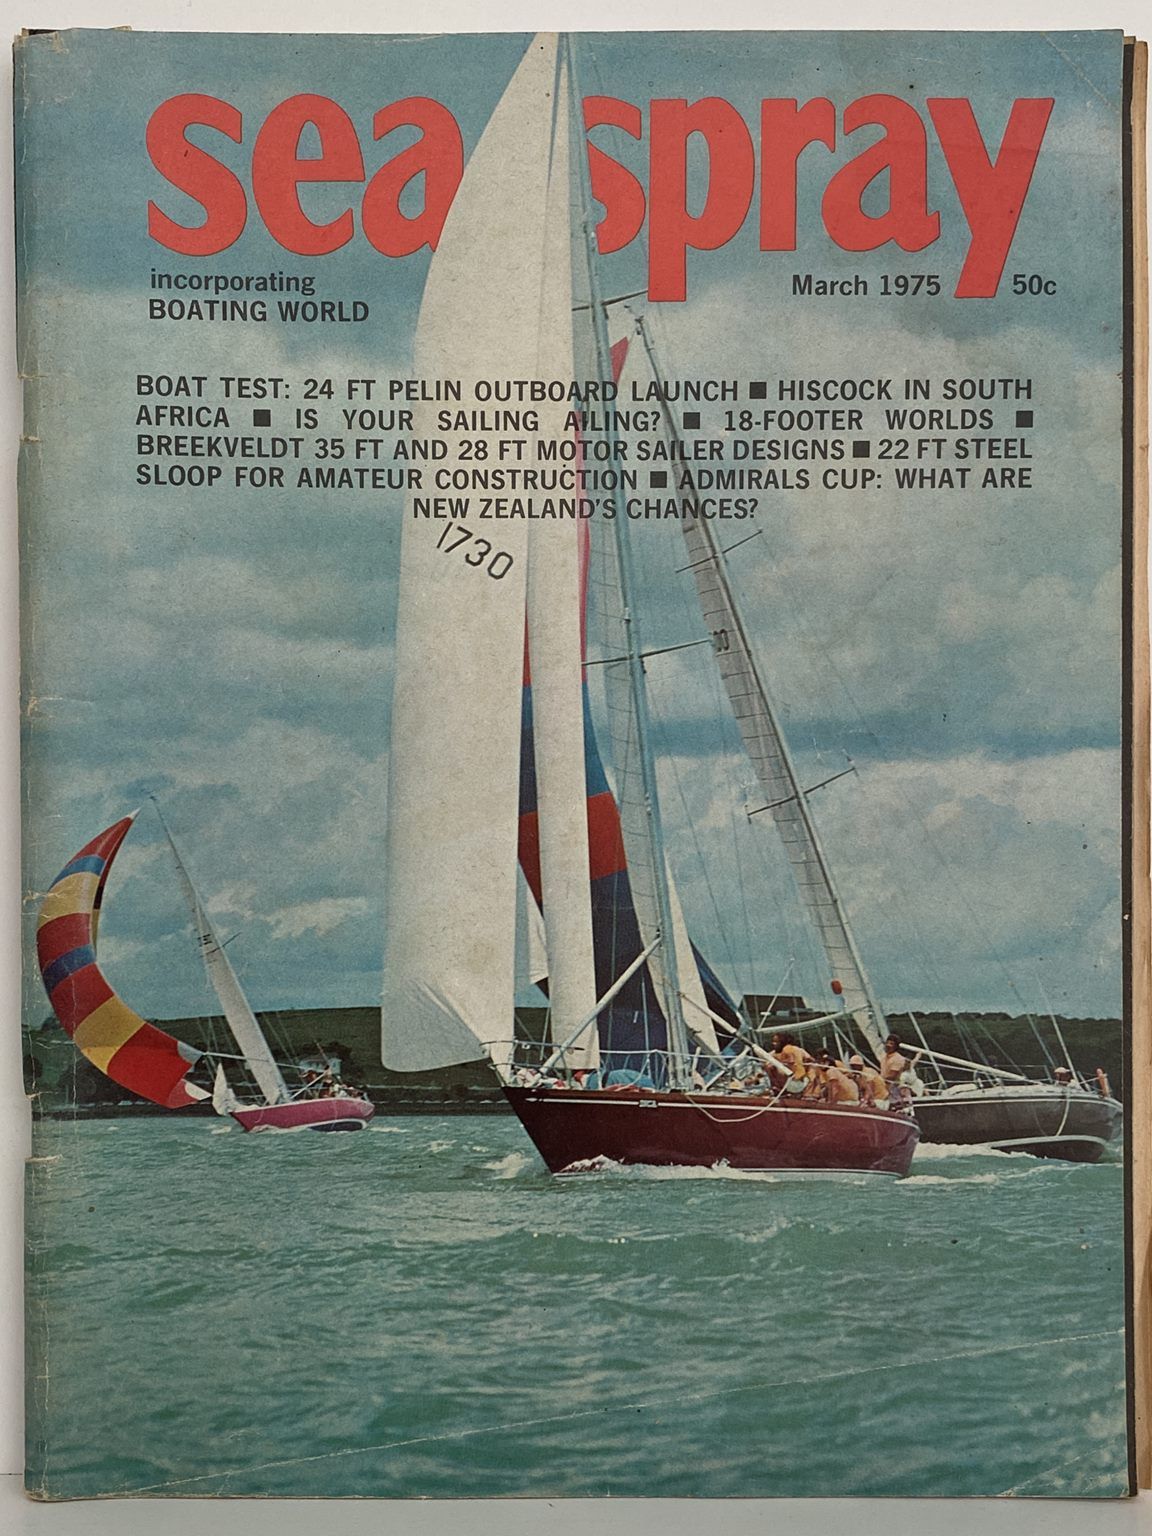 VINTAGE MAGAZINE: Sea Spray - Vol. 30, No. 2 - March 1975